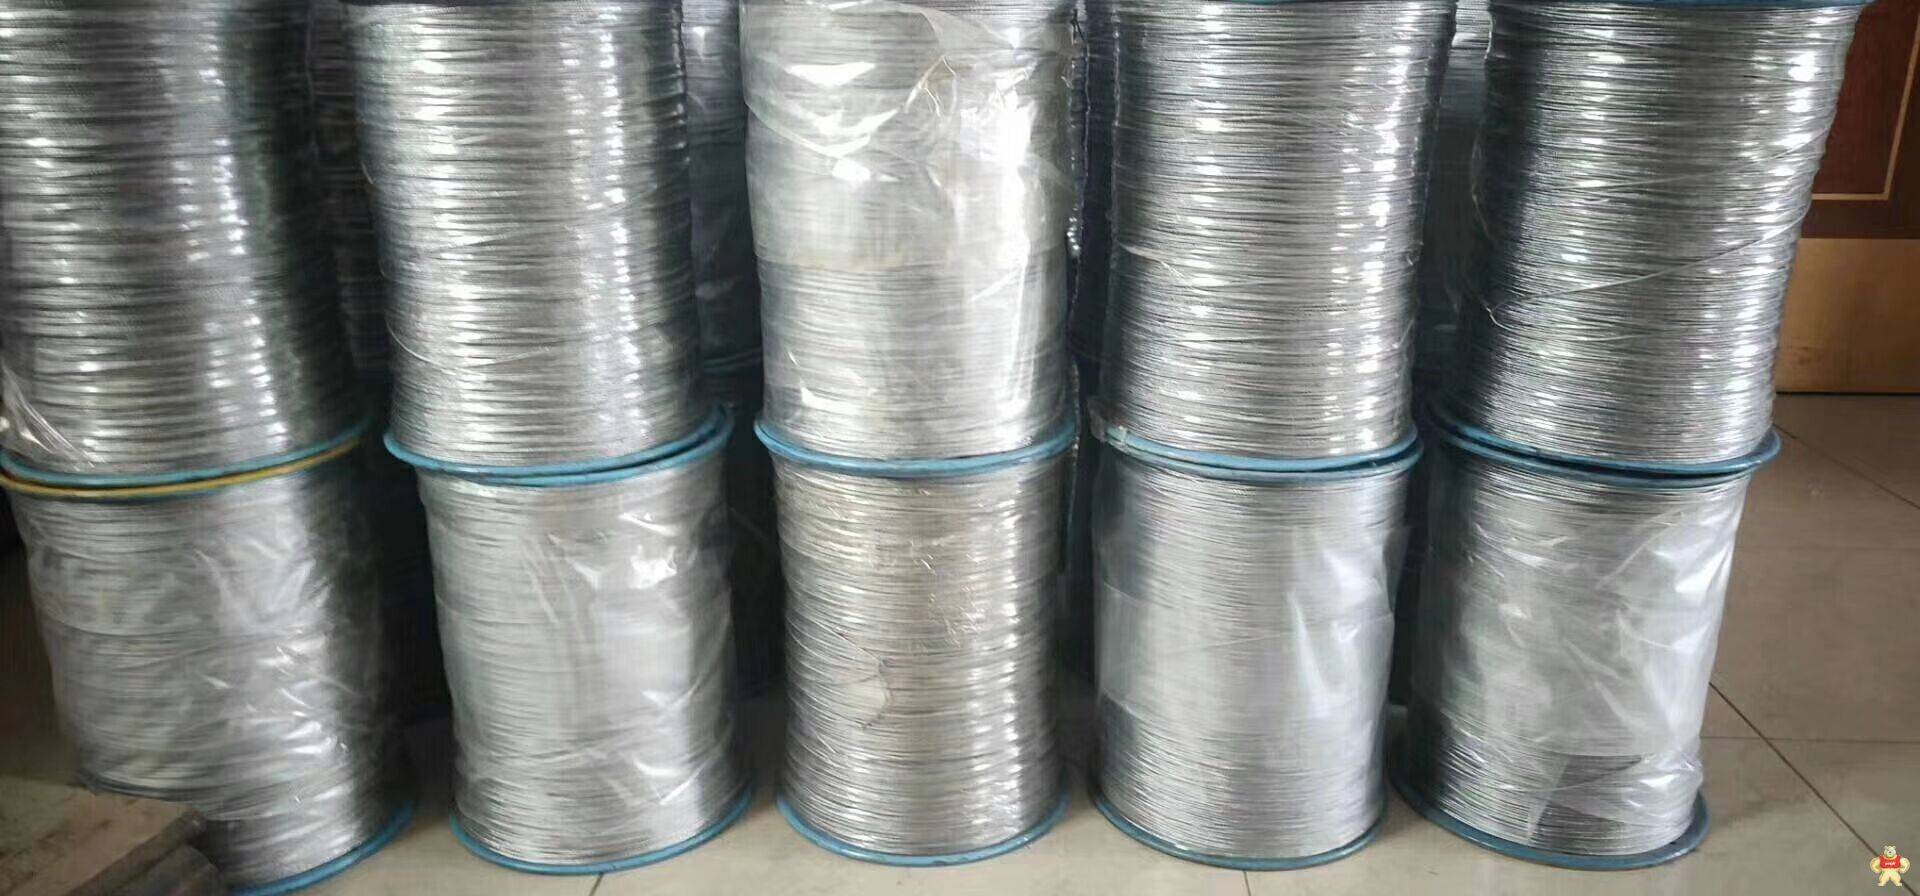 潮州玻璃棉***钢丝绳 玻璃棉钢丝绳,钢丝绳,钢结构钢丝绳,厂房钢丝绳,涂塑钢丝绳